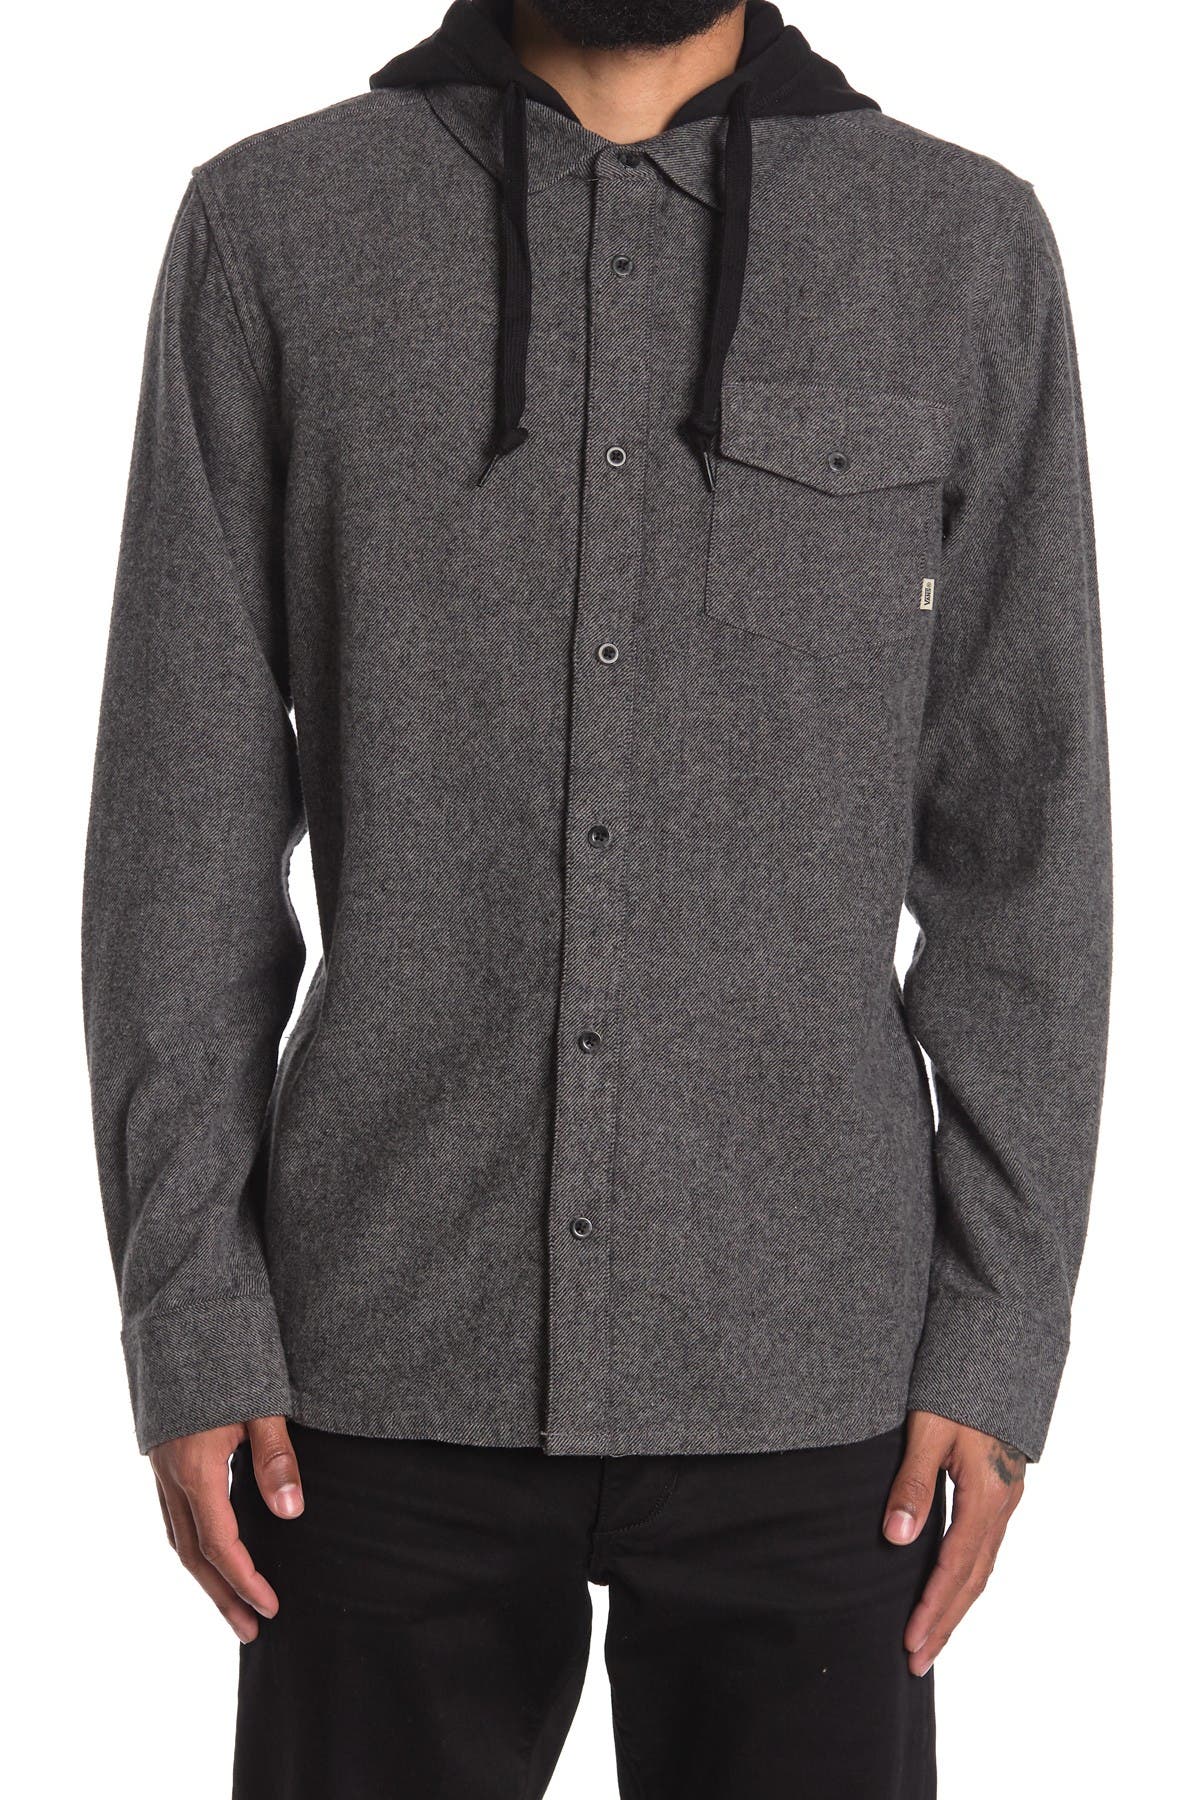 VANS | Brodown Hooded Shirt Jacket 